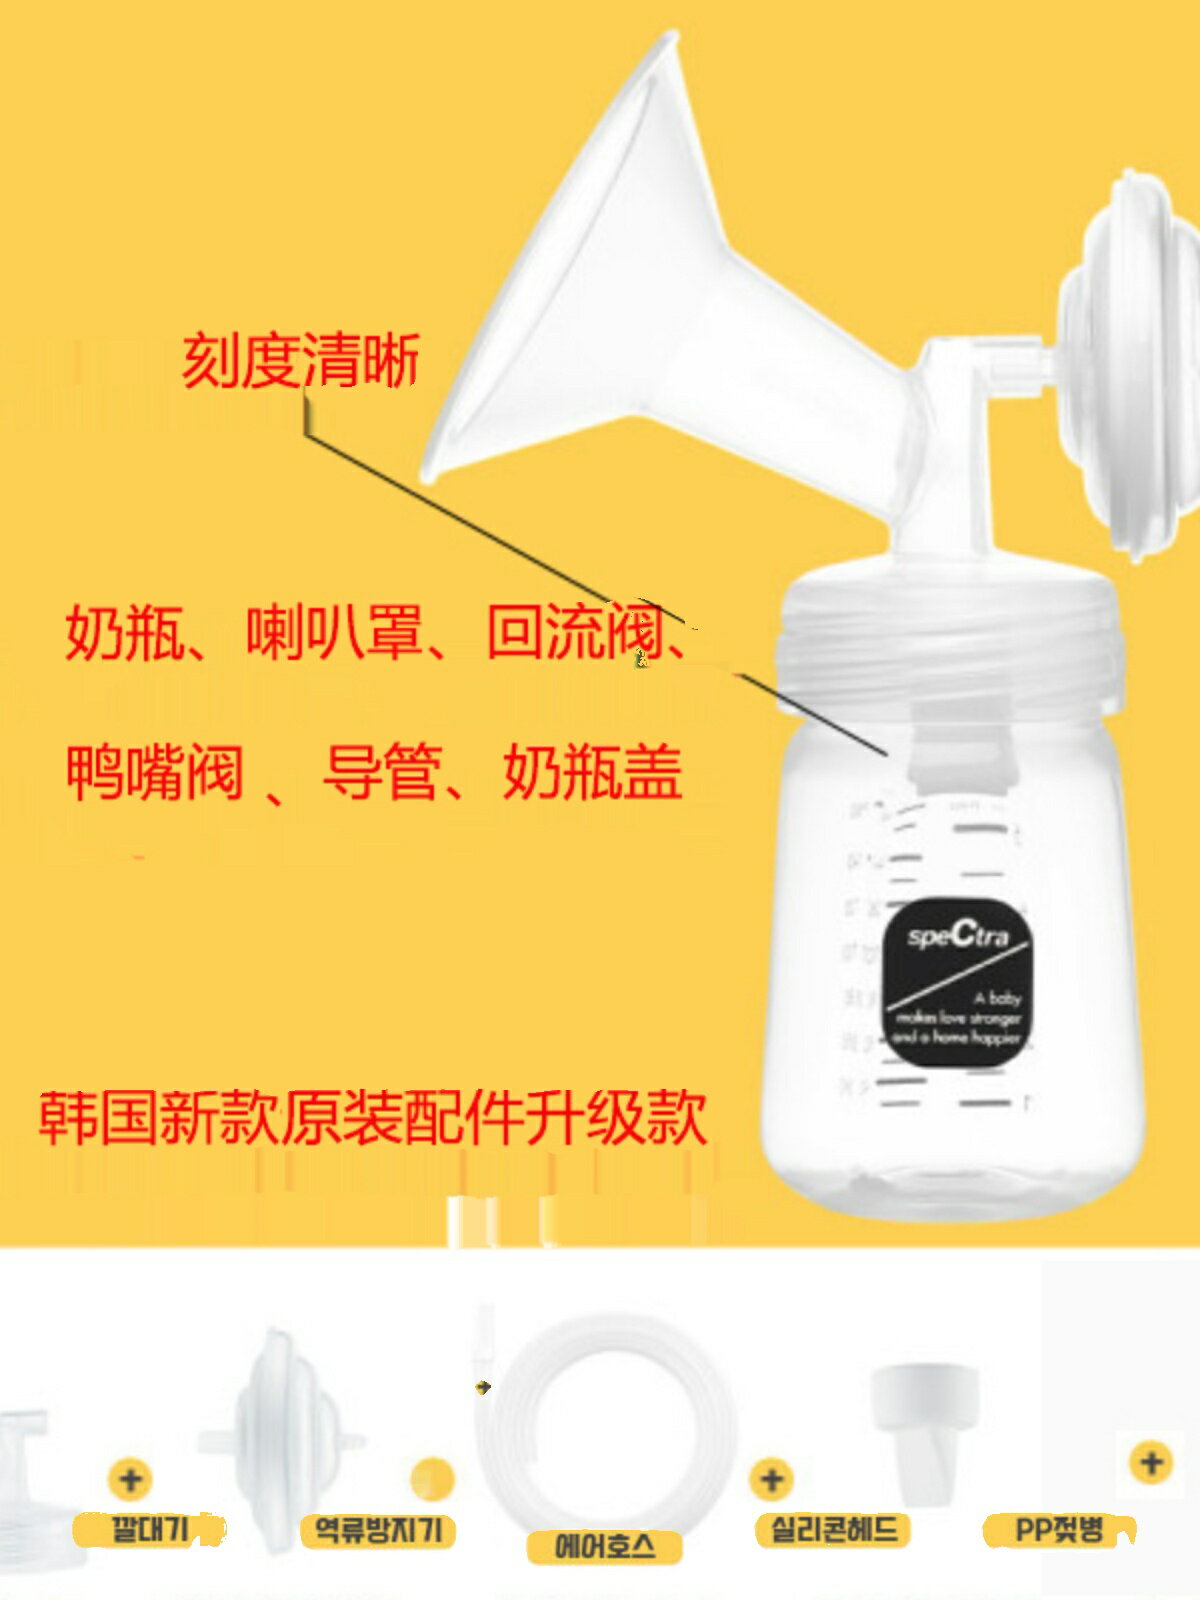 speCtra貝瑞克 吸奶器配件包1套 韓國原裝配件套裝 吸奶器配件